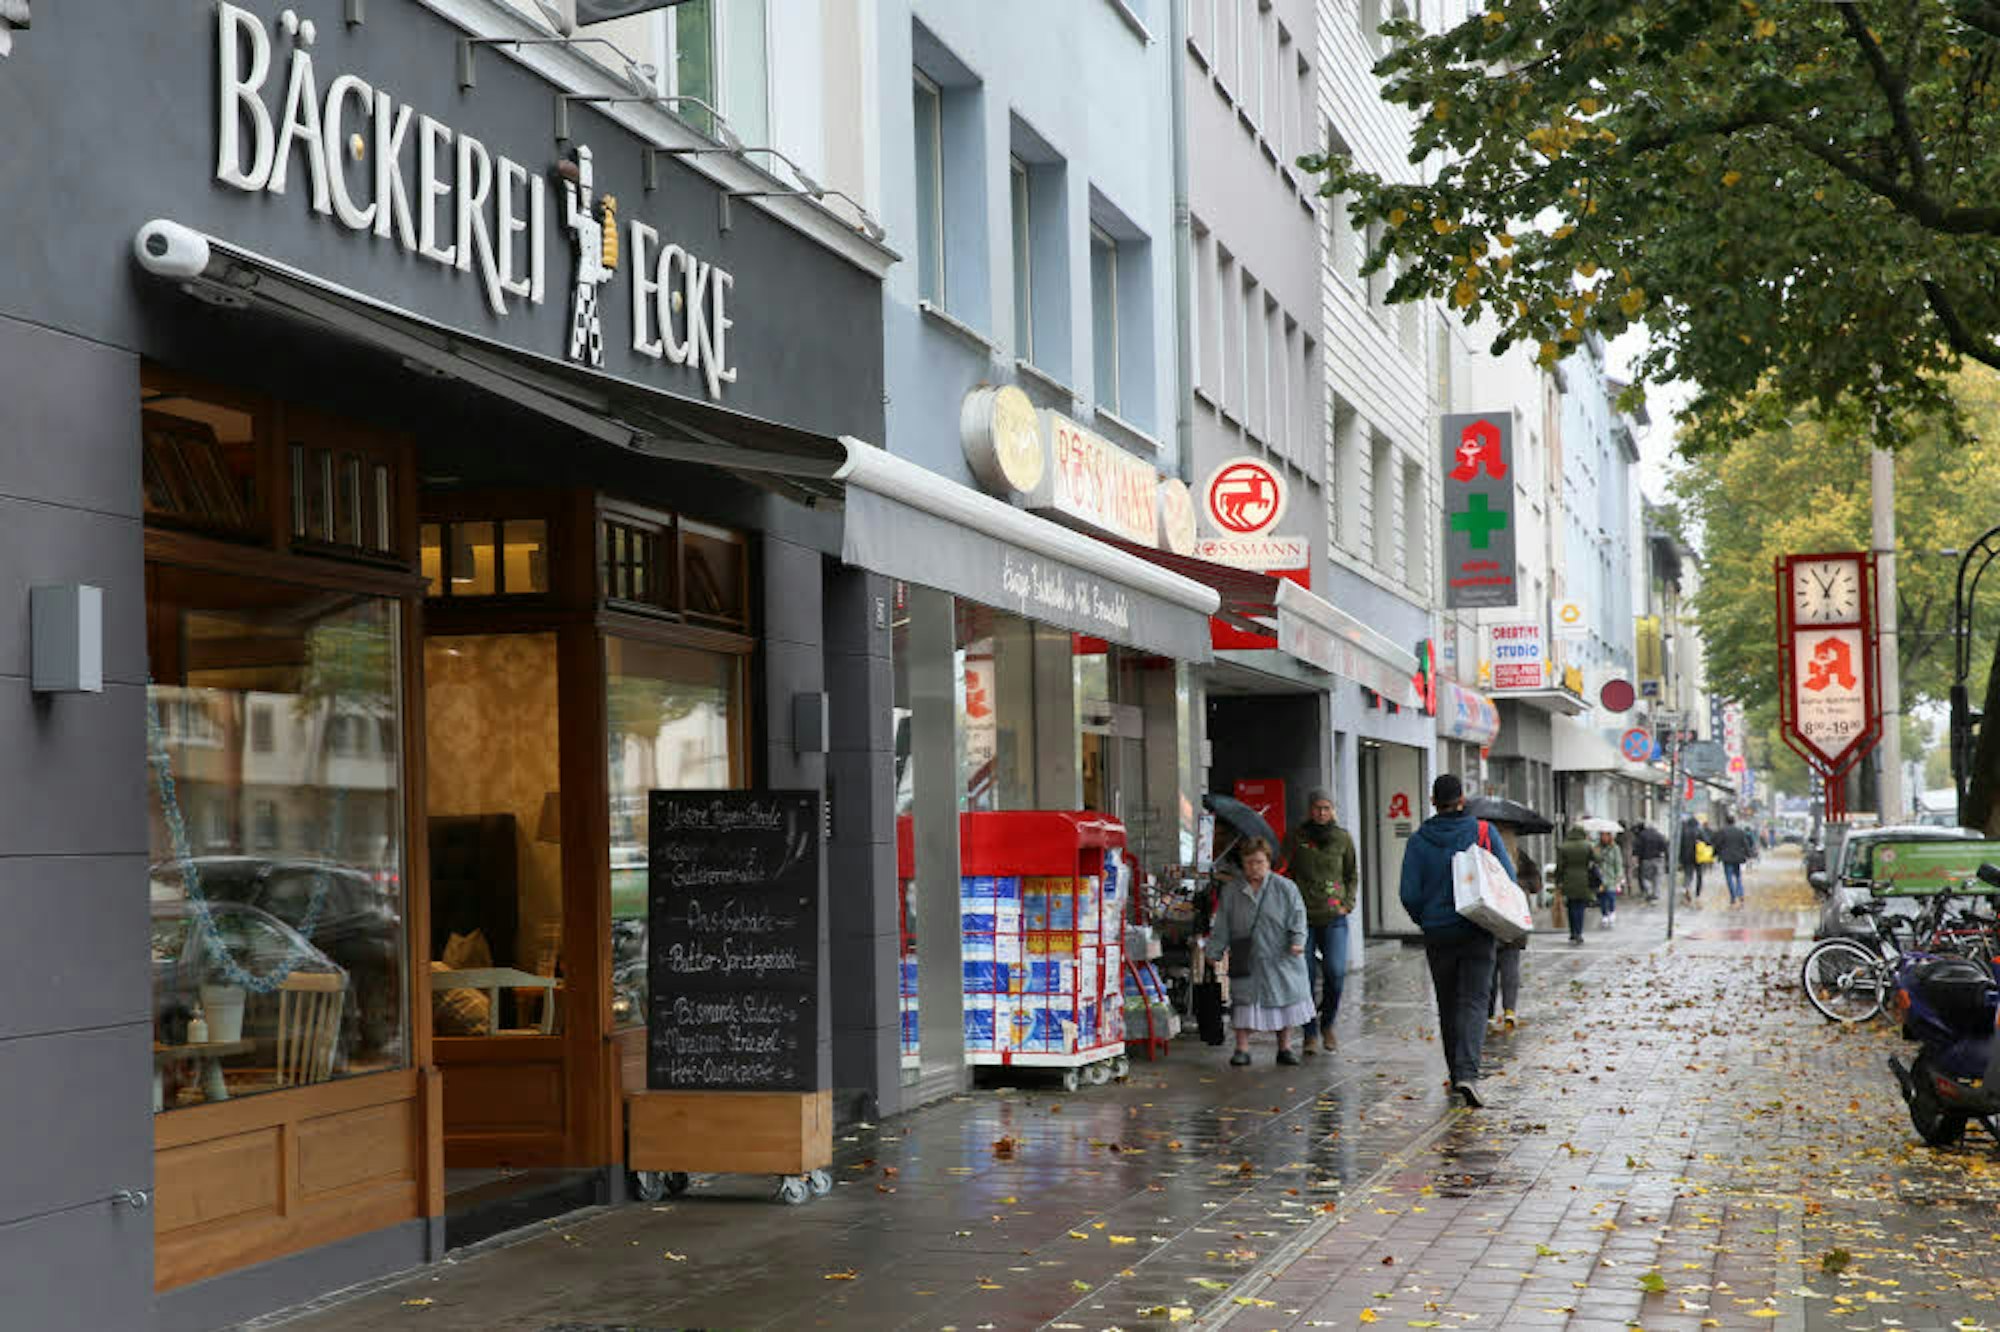 Die Aachener Straße in Braunsfeld soll attraktiver werden.